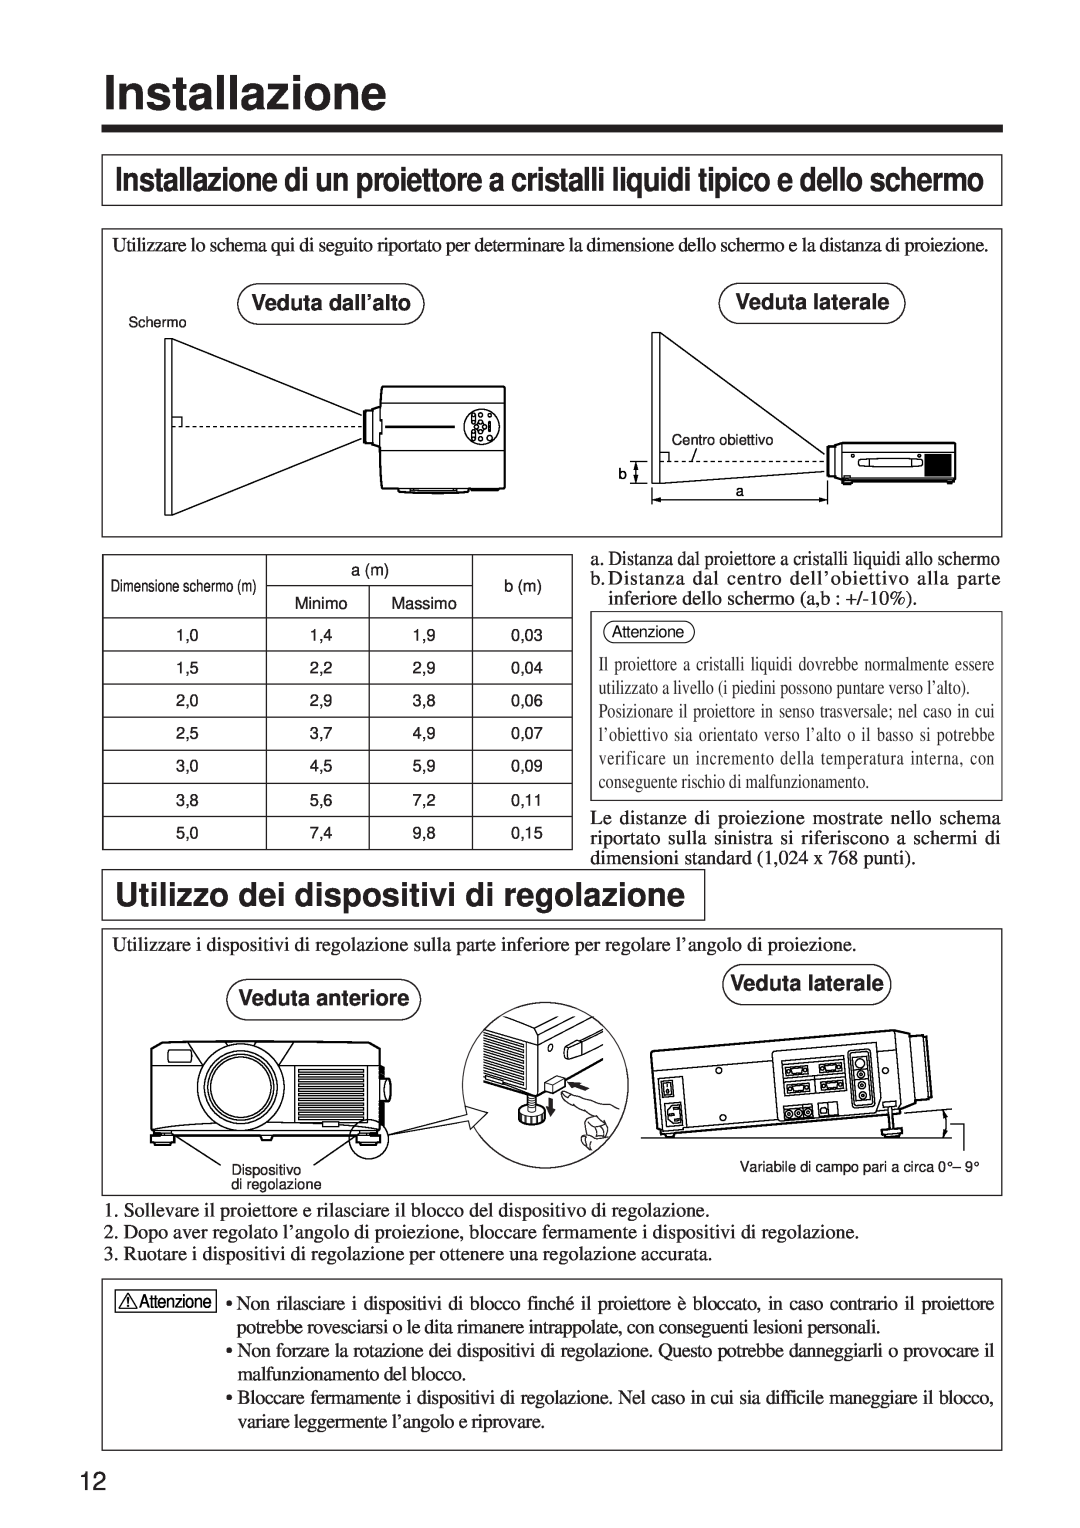 BOXLIGHT MP-650i user manual Installazione, Utilizzo dei dispositivi di regolazione, Veduta dall’alto, Veduta laterale 